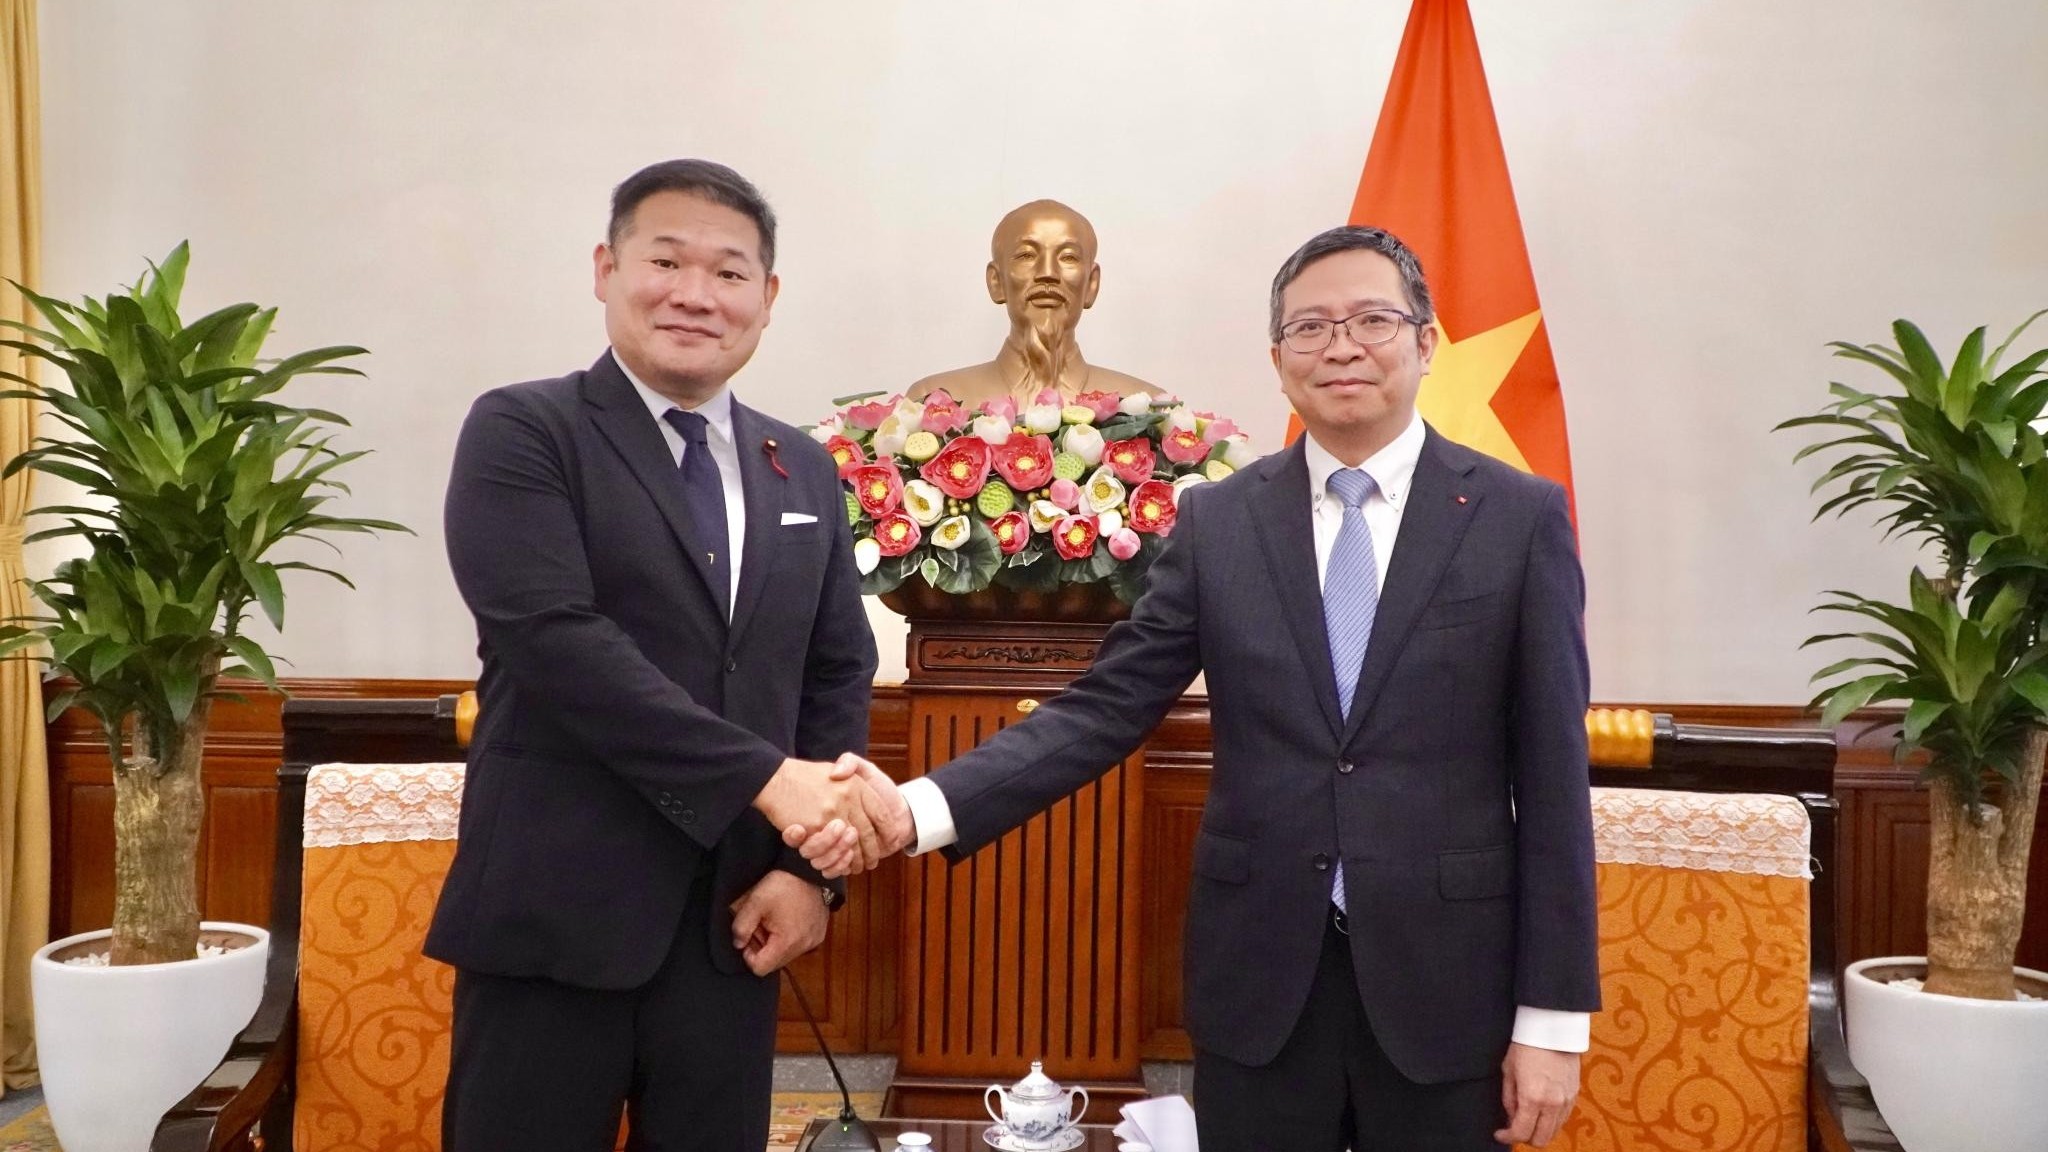 Đưa quan hệ Việt Nam-Nhật Bản phát triển sâu rộng, toàn diện theo 4 điểm sáng nổi bật